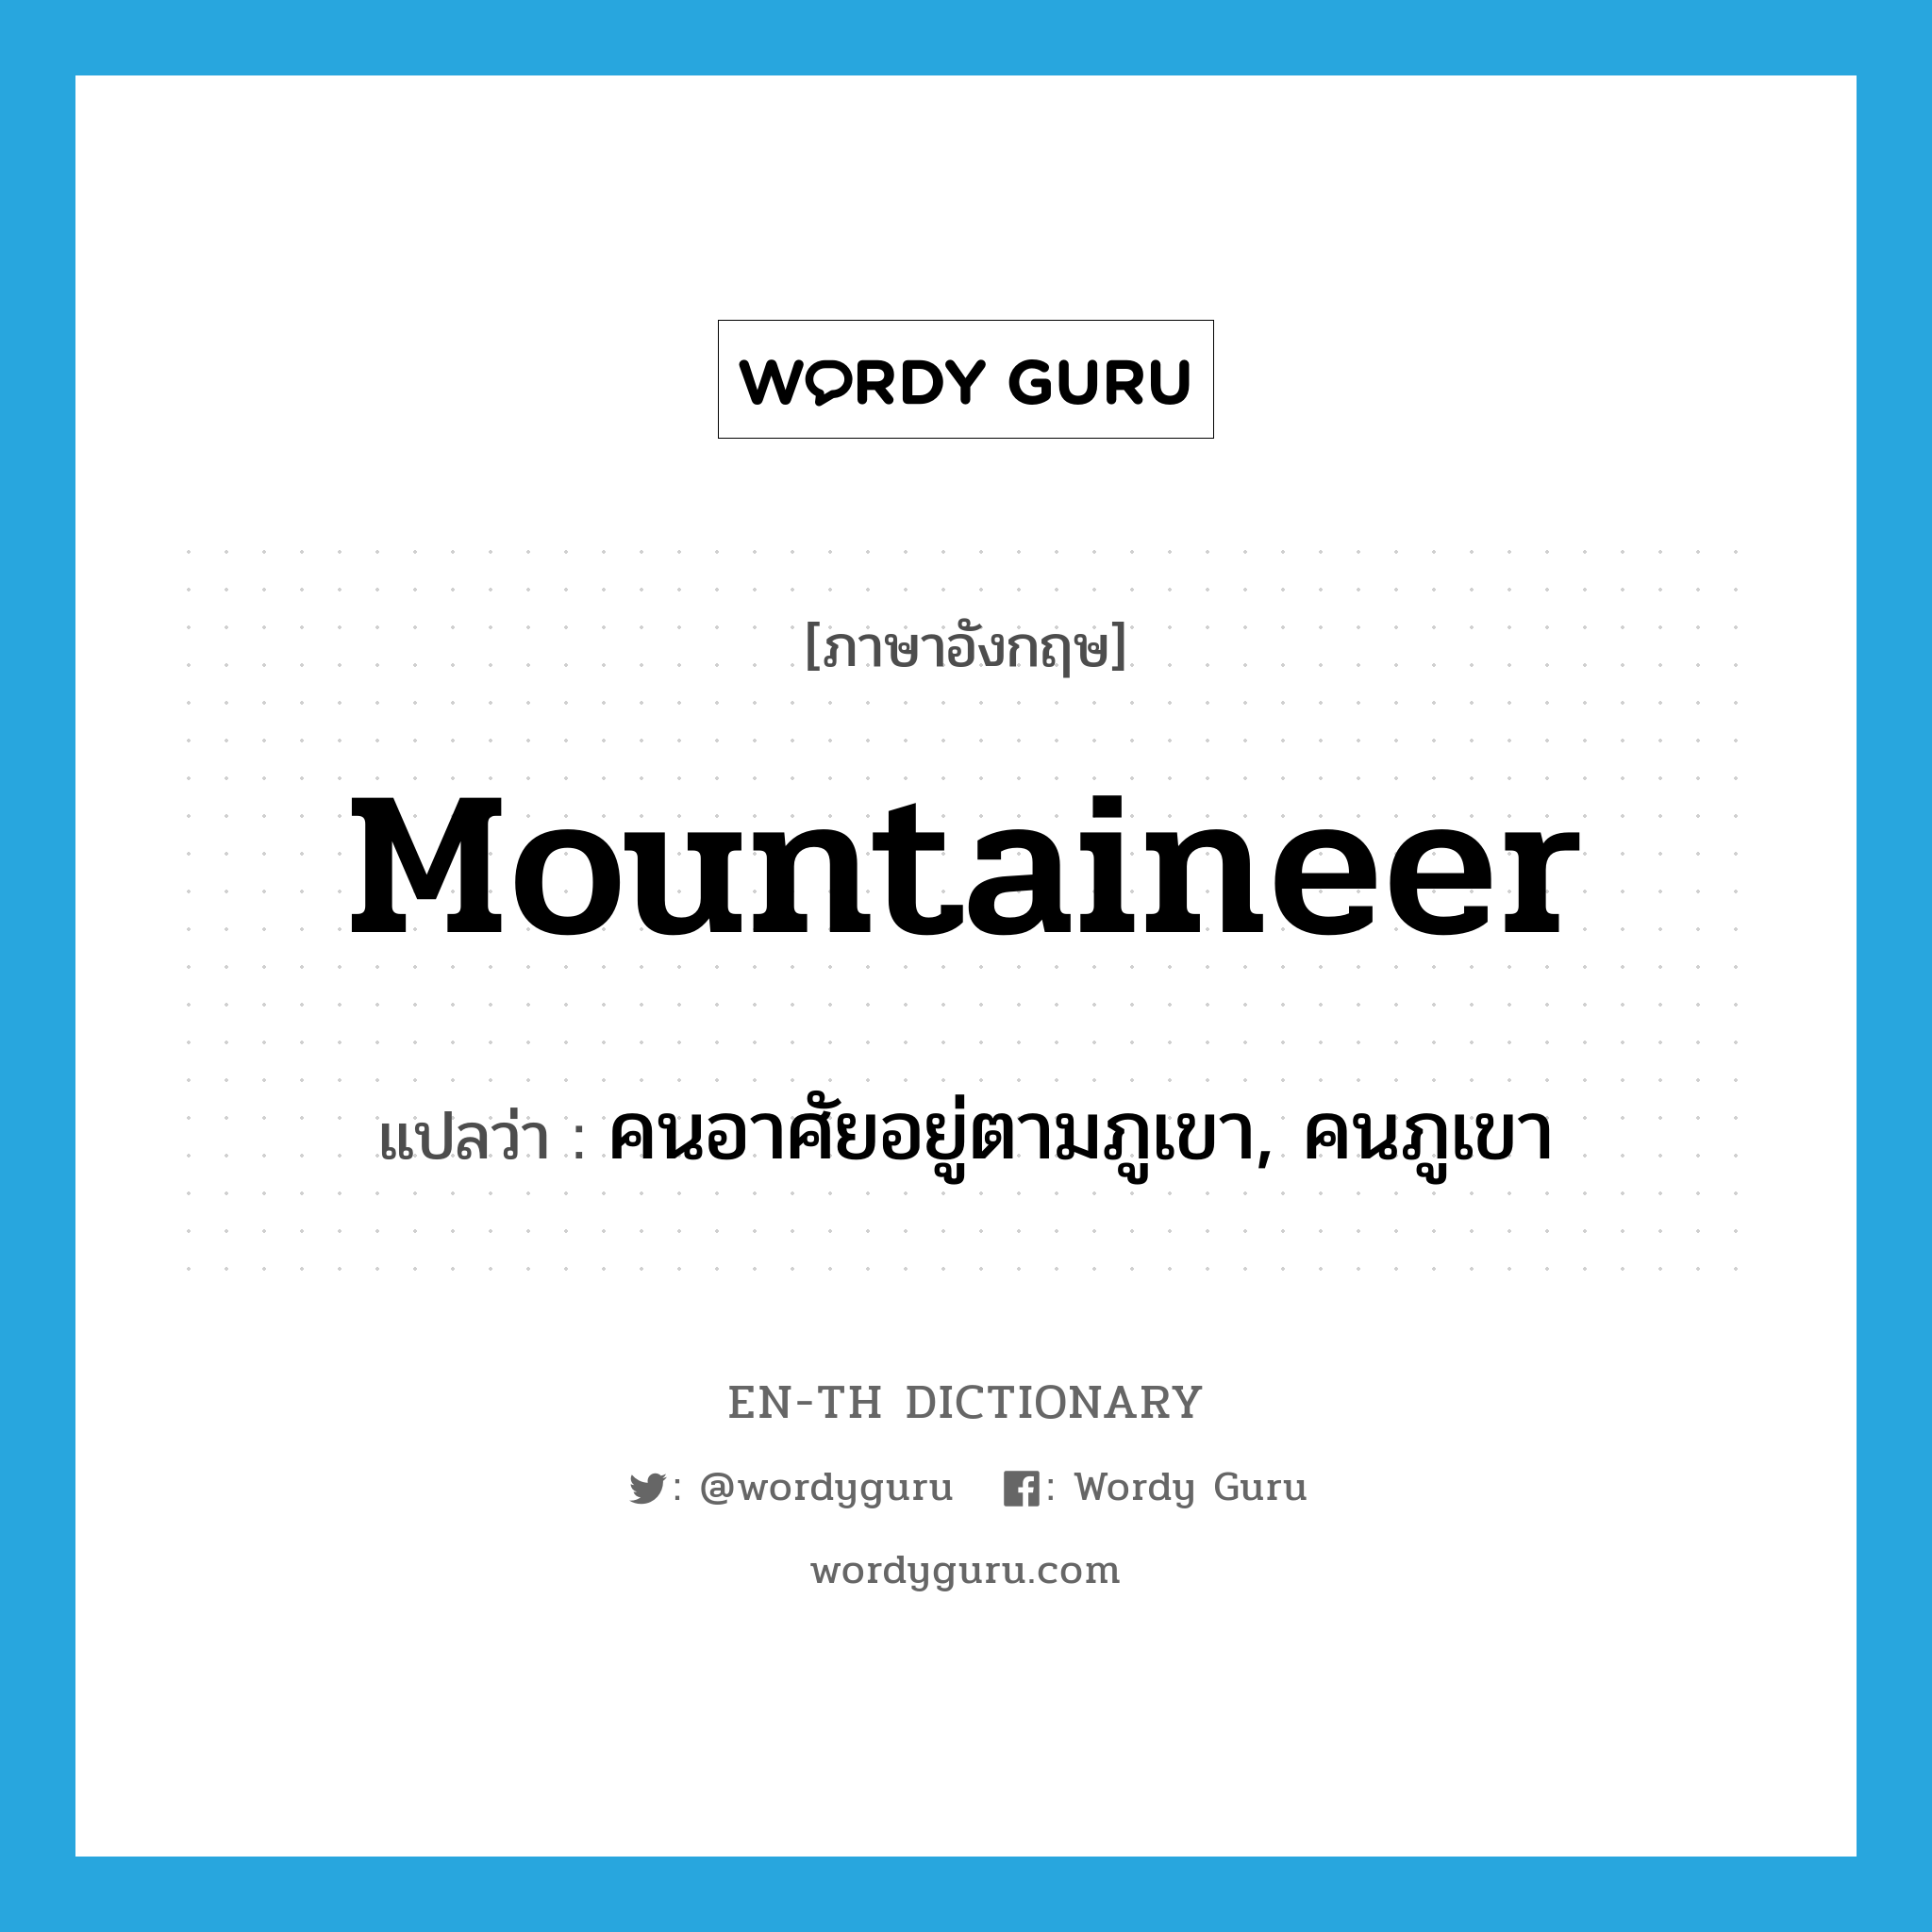 คนอาศัยอยู่ตามภูเขา, คนภูเขา ภาษาอังกฤษ?, คำศัพท์ภาษาอังกฤษ คนอาศัยอยู่ตามภูเขา, คนภูเขา แปลว่า mountaineer ประเภท N หมวด N